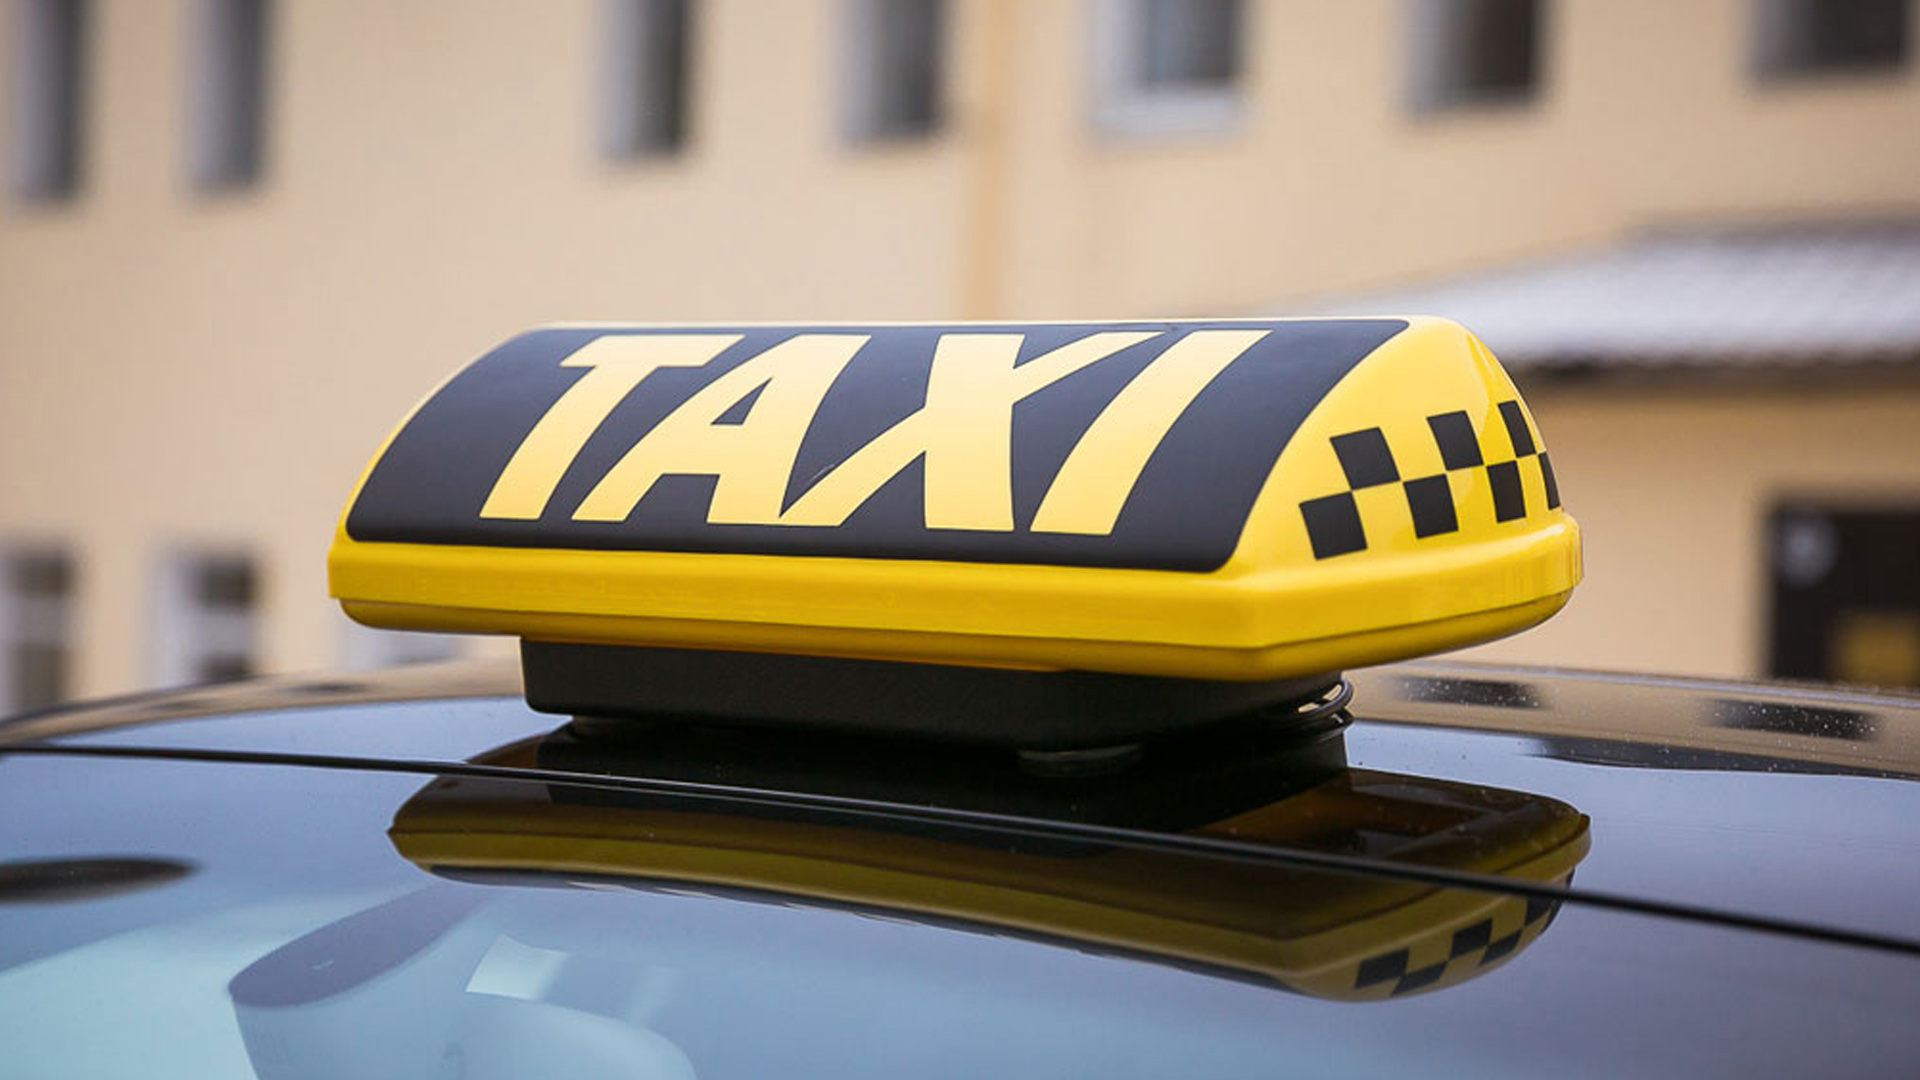 Средняя стоимость поездки в каршеринге оказалась выше цен на такси